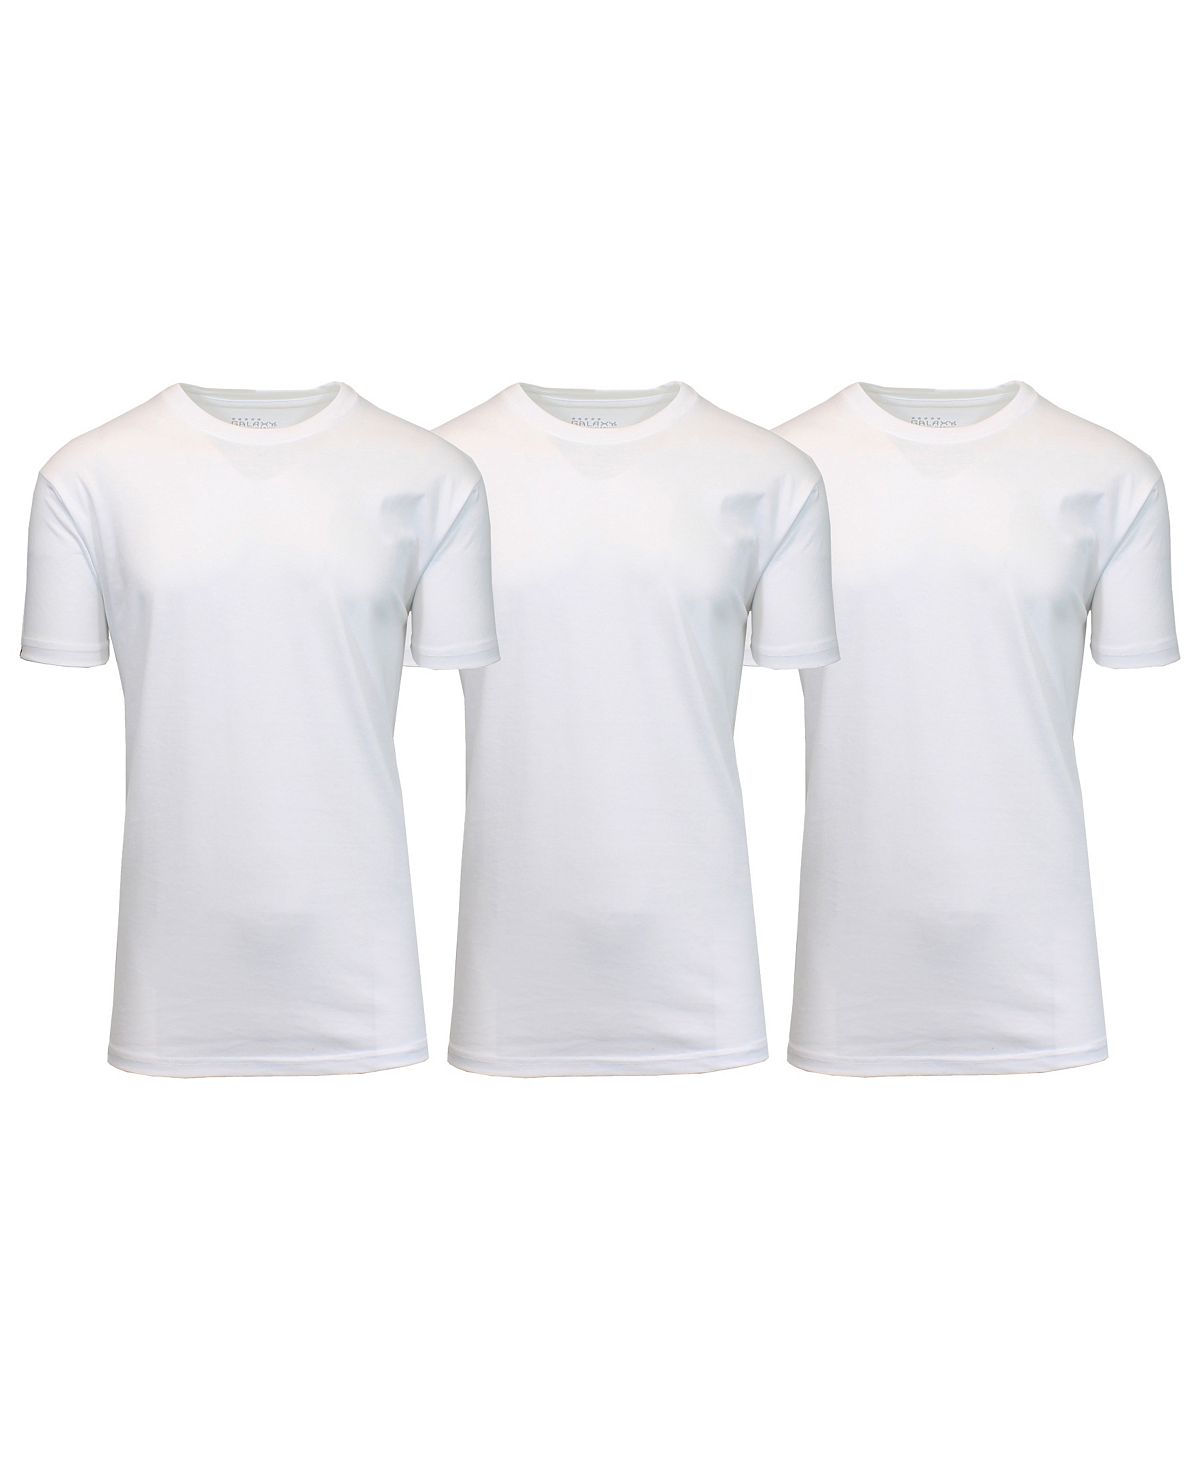 Мужские футболки с круглым вырезом, упаковка из 3 шт. Galaxy By Harvic, белый